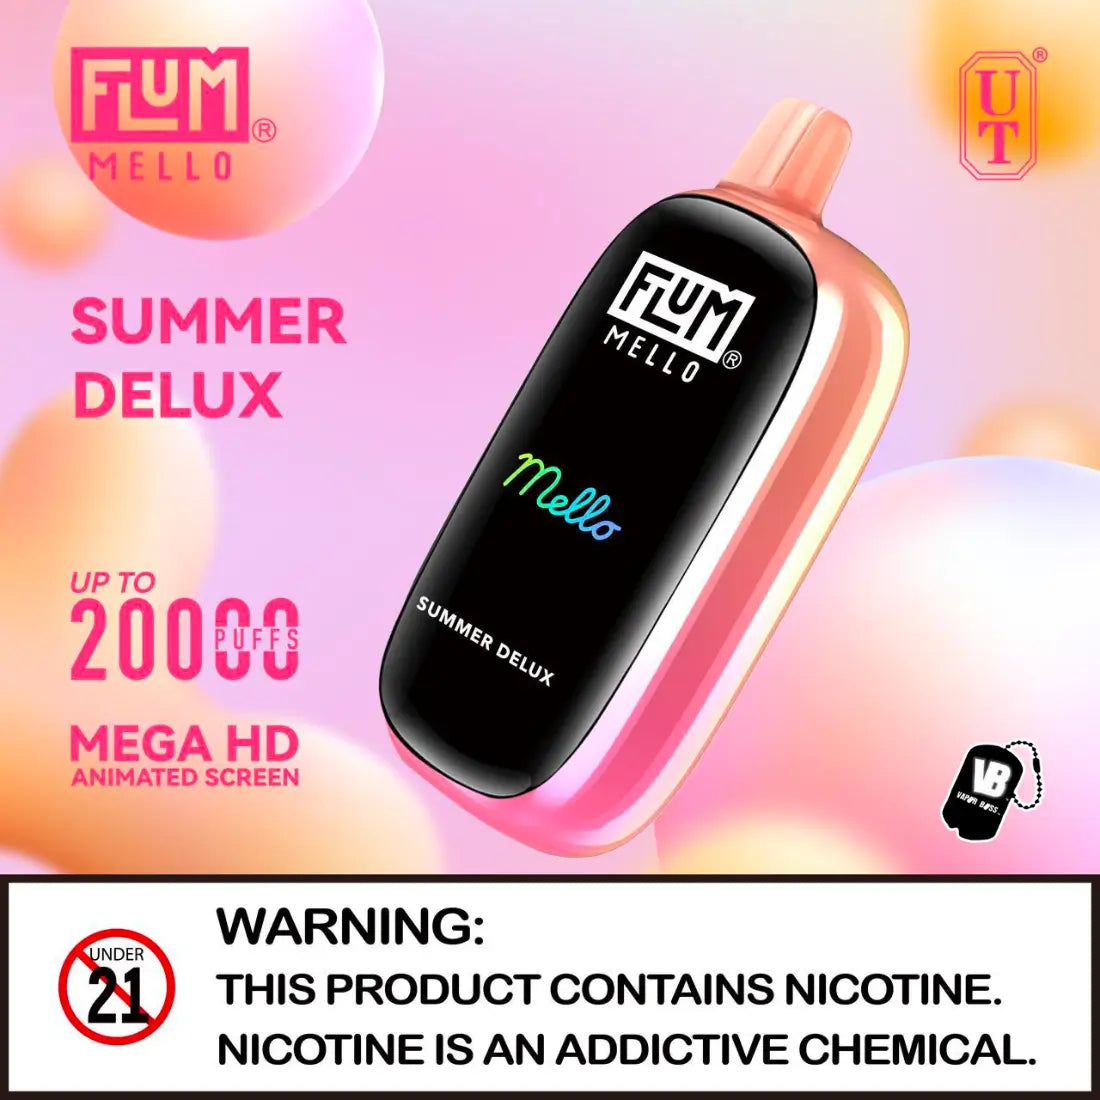 Flum Mello Summer Delux